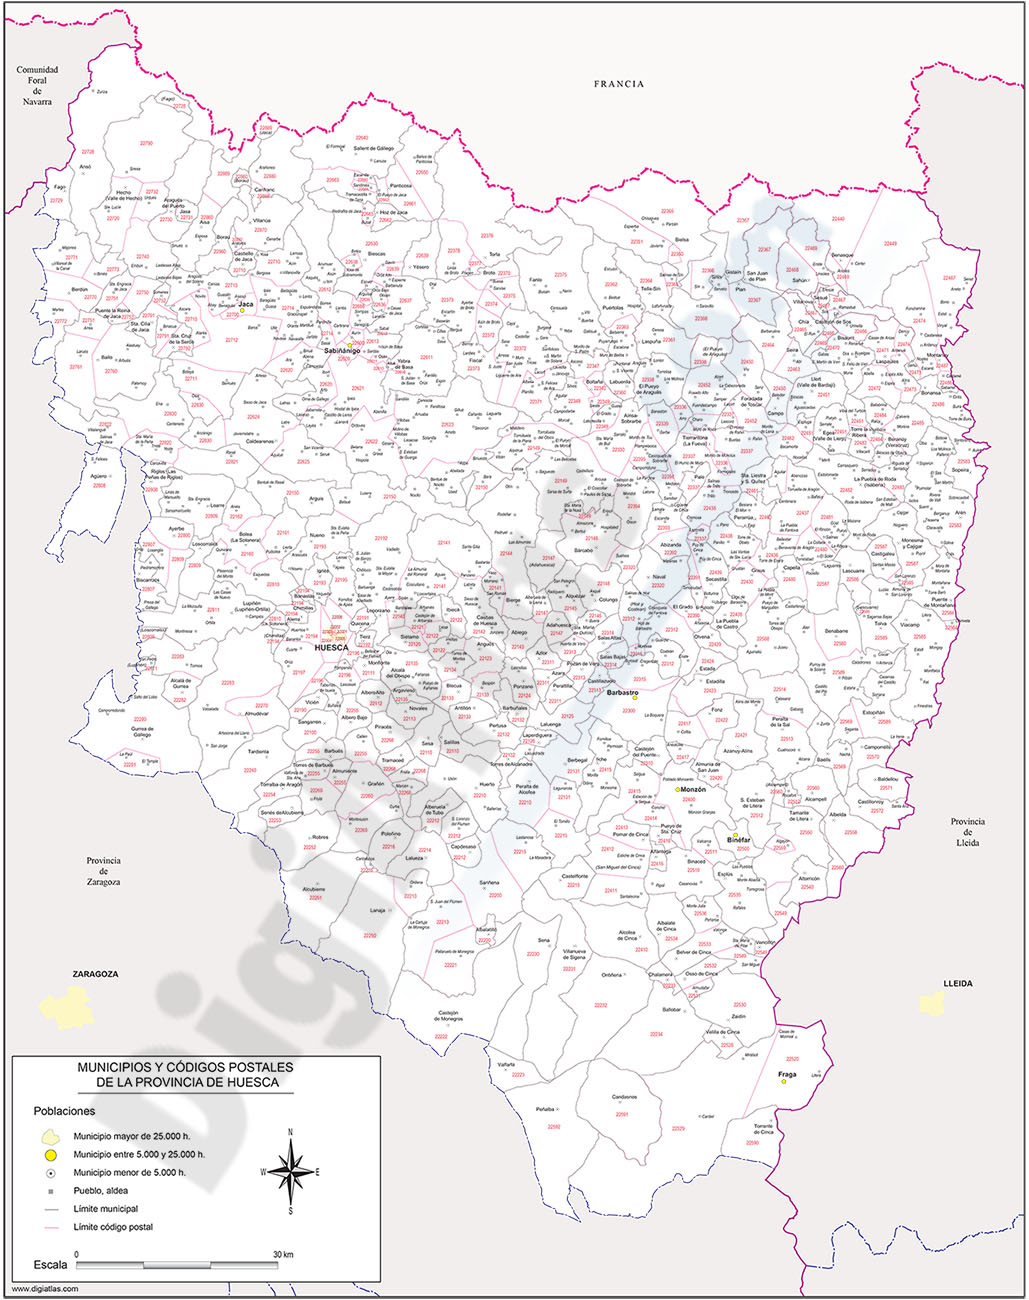 Huesca - mapa provincial con municipios y Códigos Postales